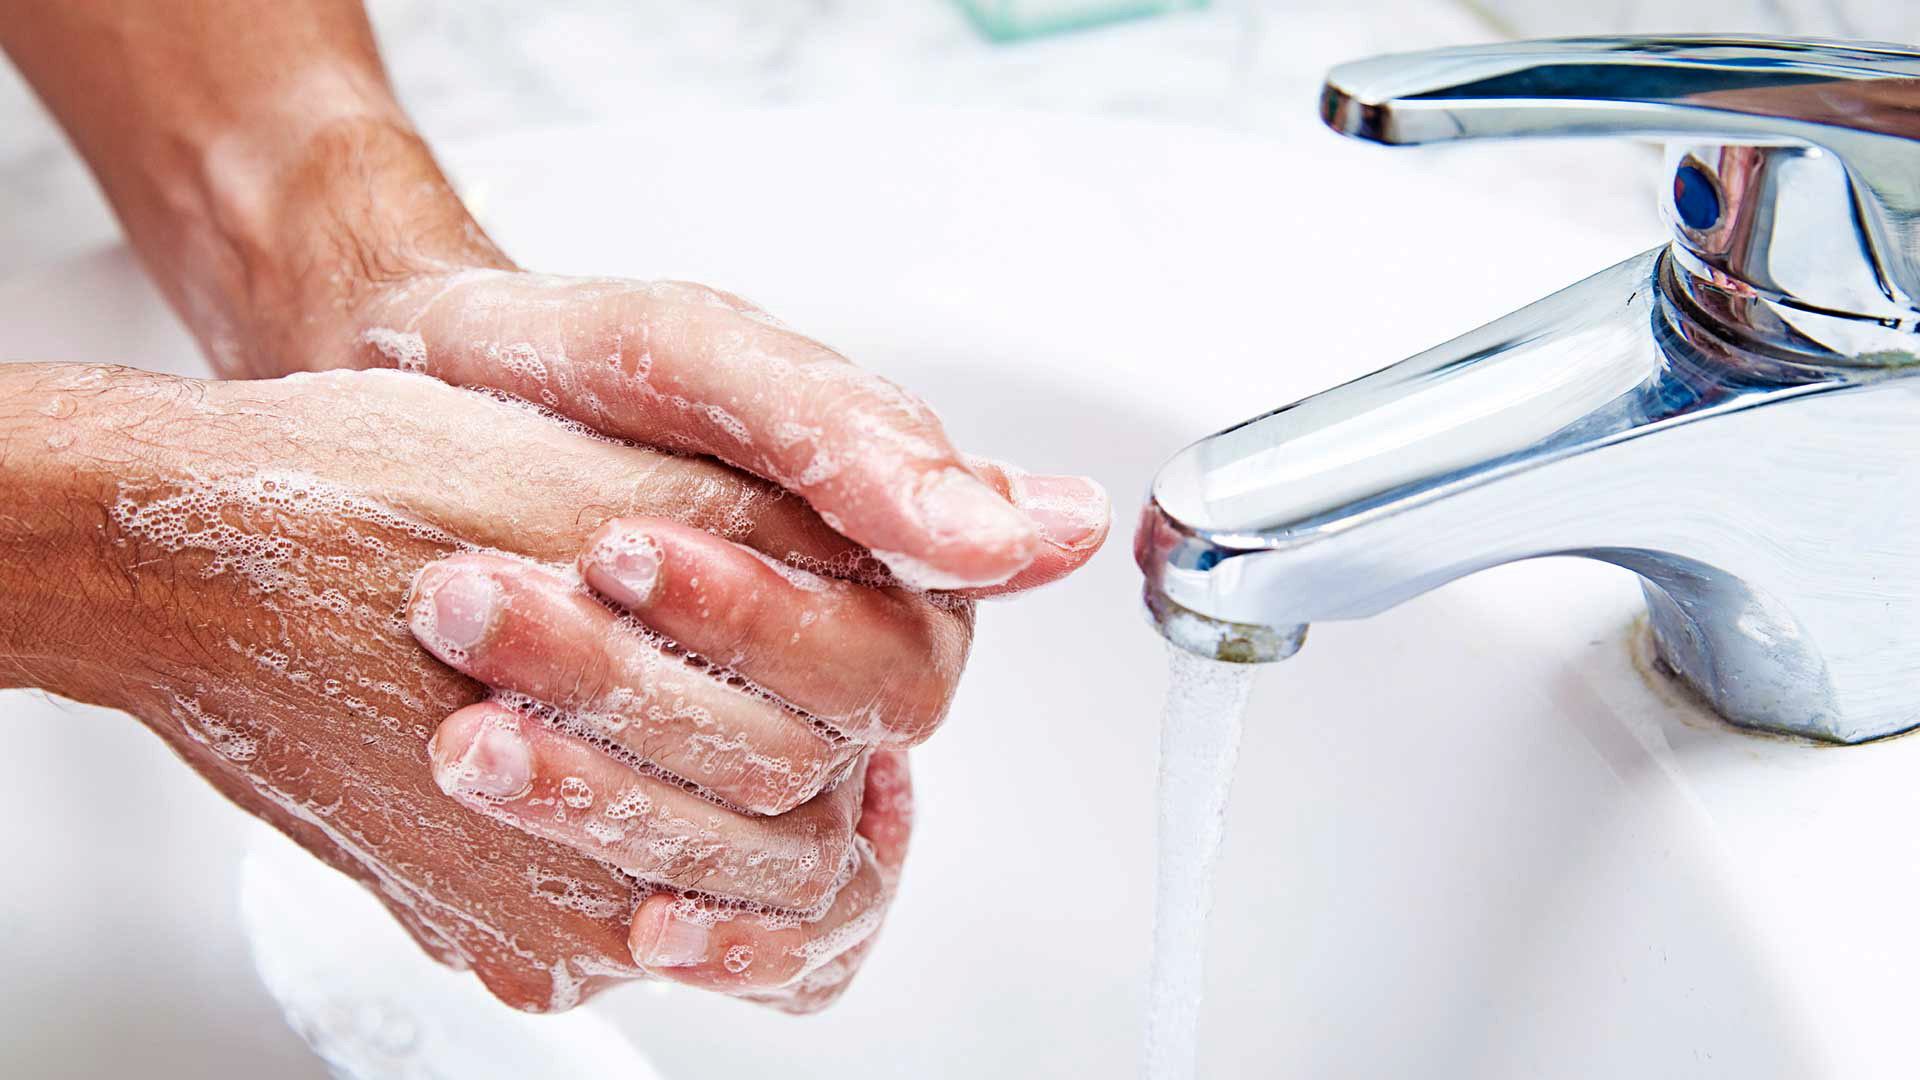 Coronavirus: come proteggersi, come lavarsi le mani e curare gli ambienti